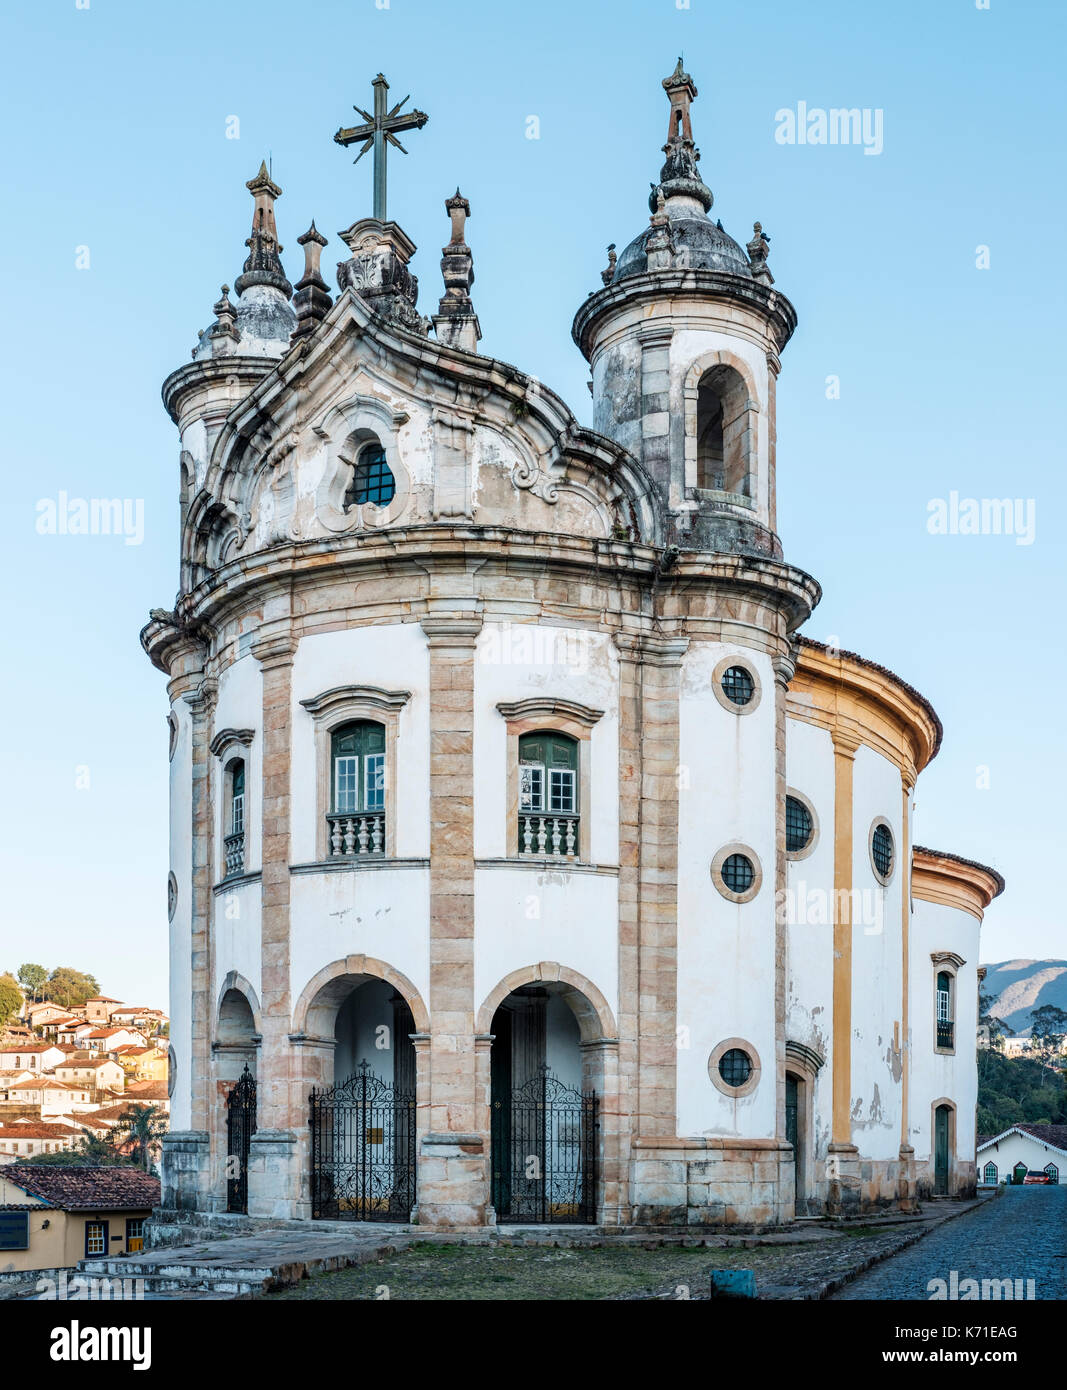 Fachada, Vista exterior de la Iglesia de Nossa Senhora do Rosario, ejemplo de arquitectura colonial y barroca en Ouro Preto, Minas Gerais, Brasil. Foto de stock